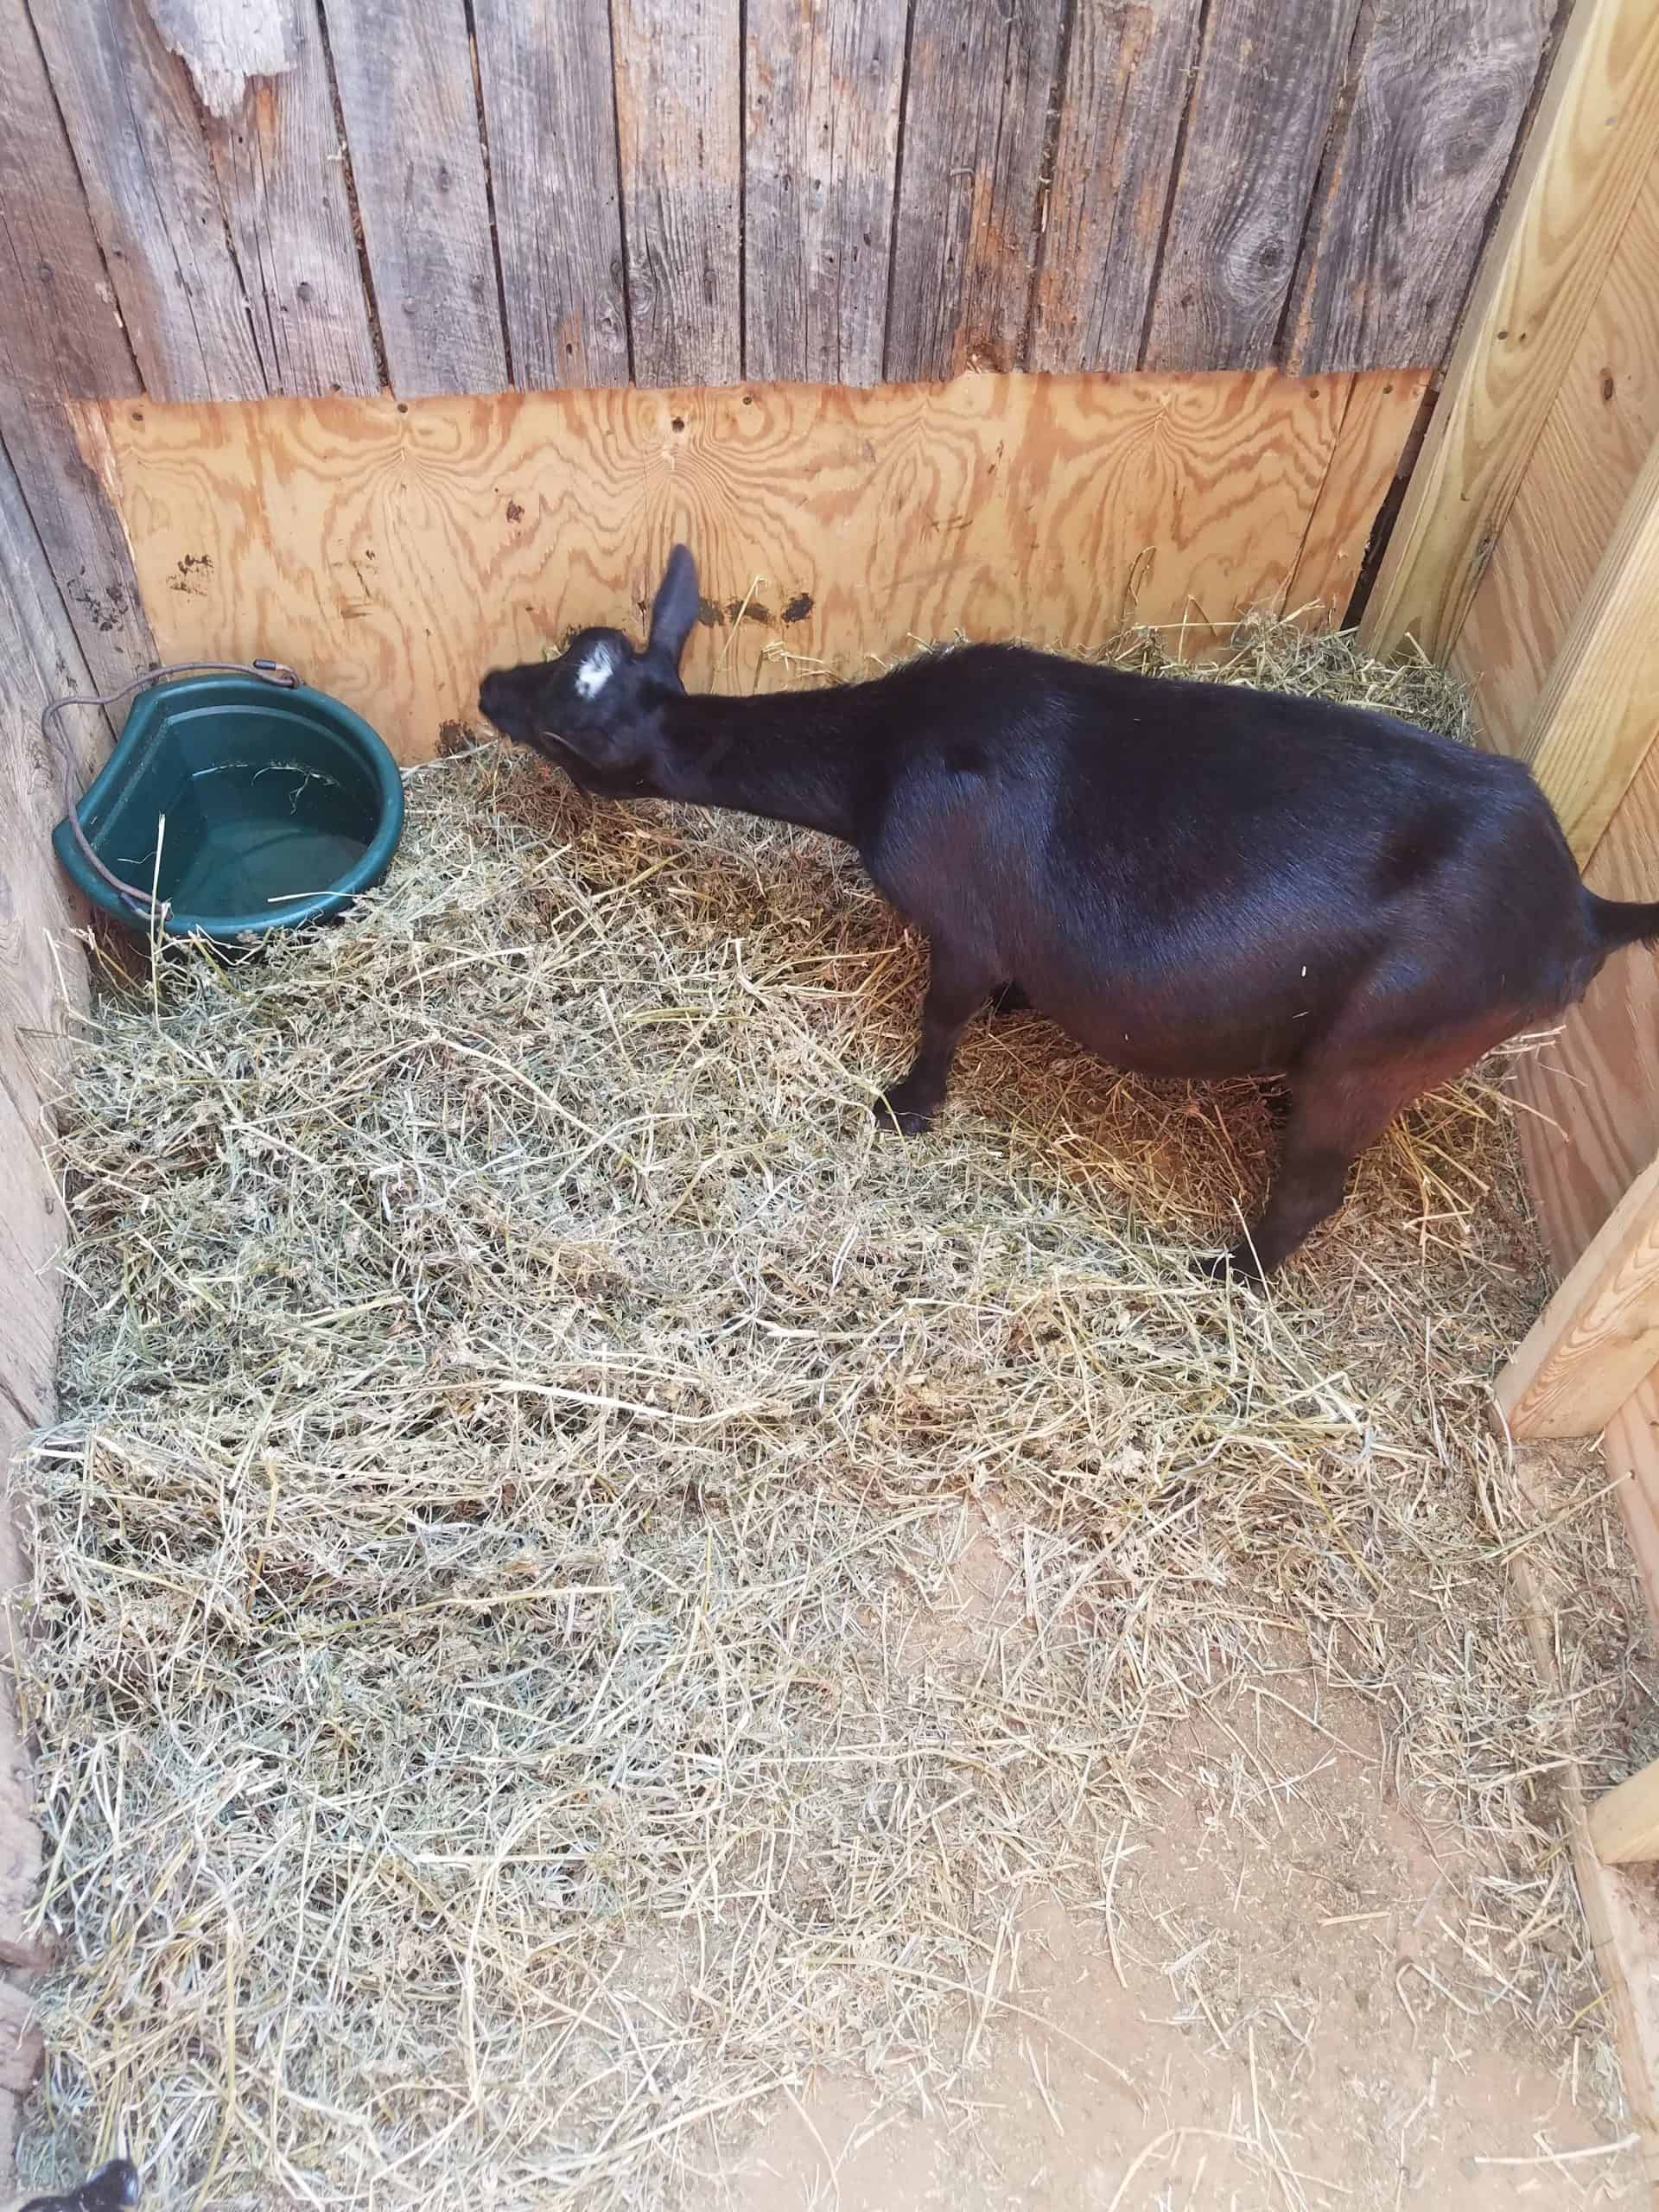 goat nesting prior to birth